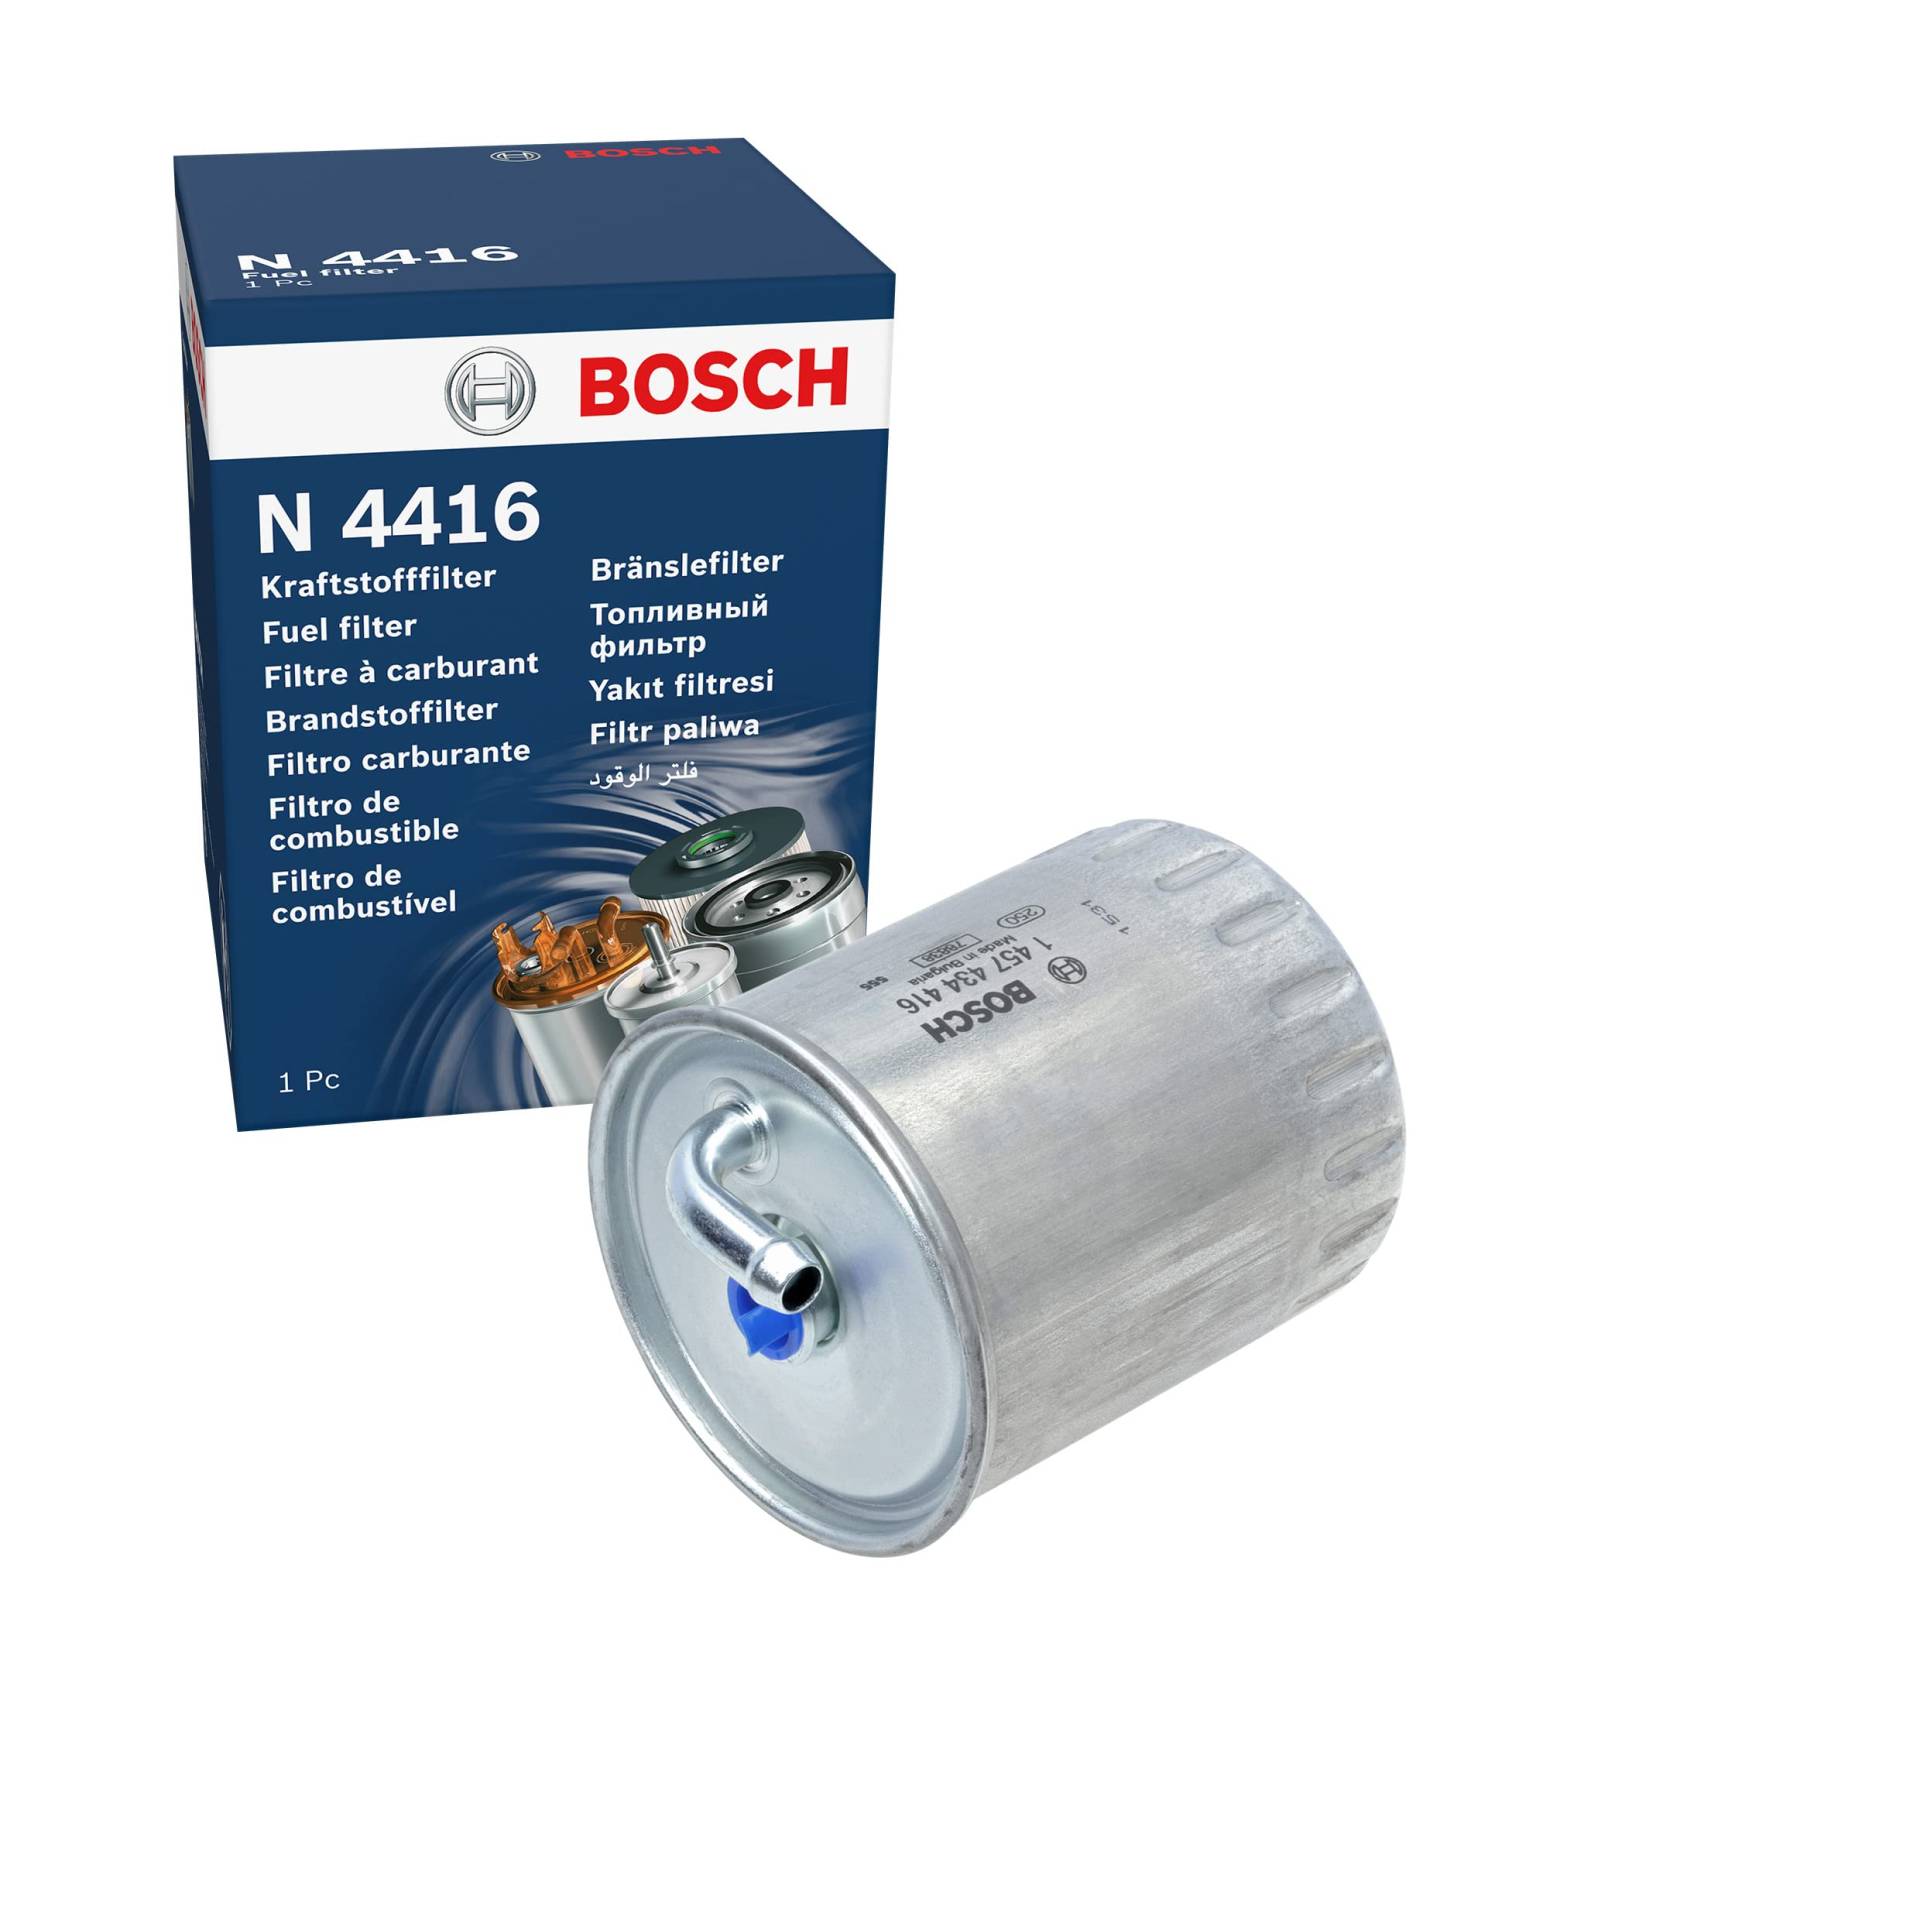 Bosch N4416 - Dieselfilter Auto von Bosch Automotive